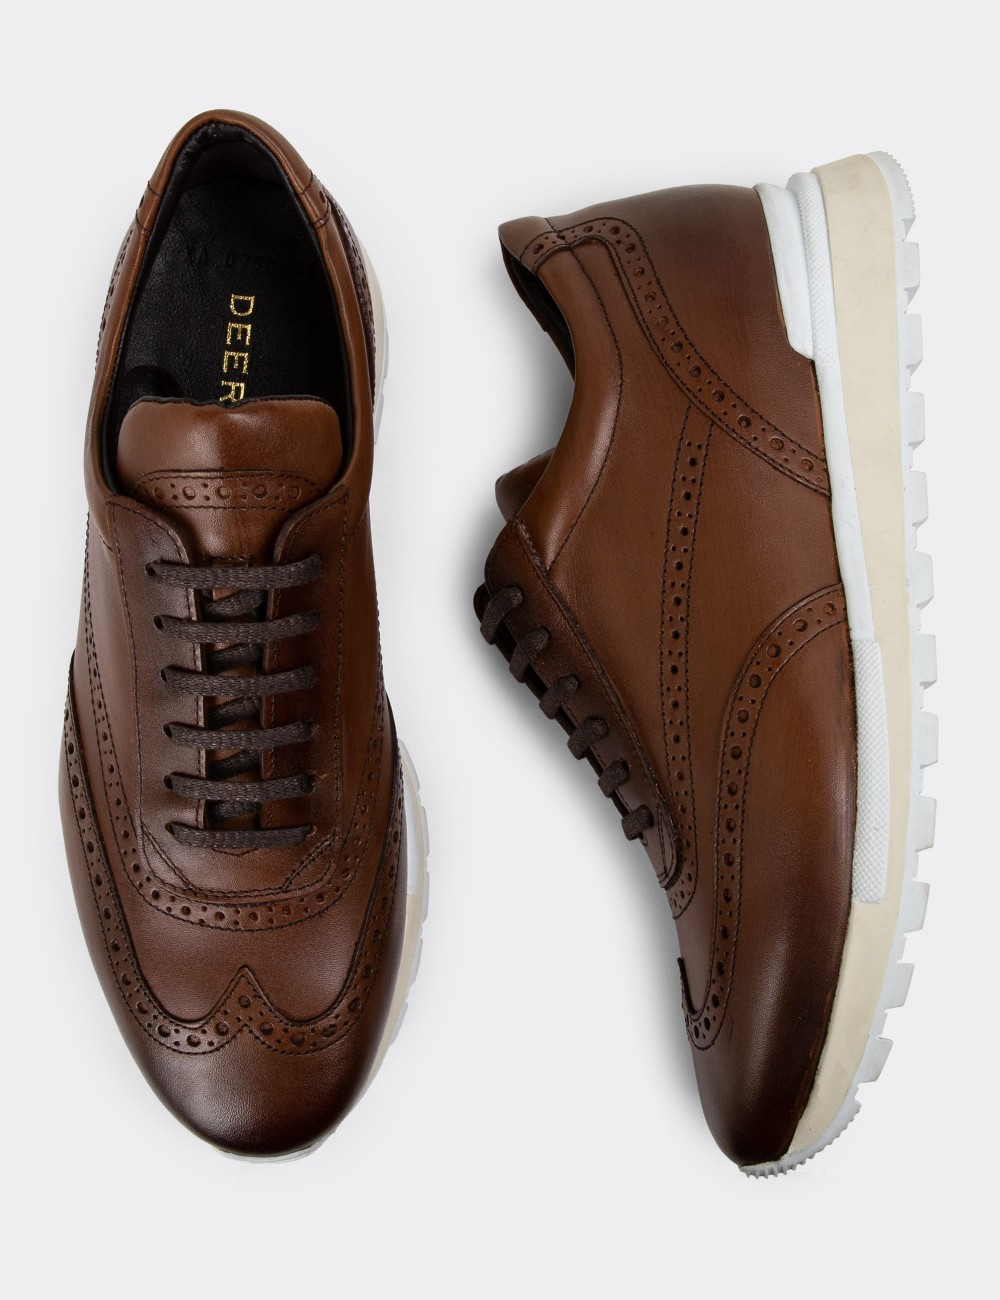 Tan Leather Sneakers - 00750MTBAT05